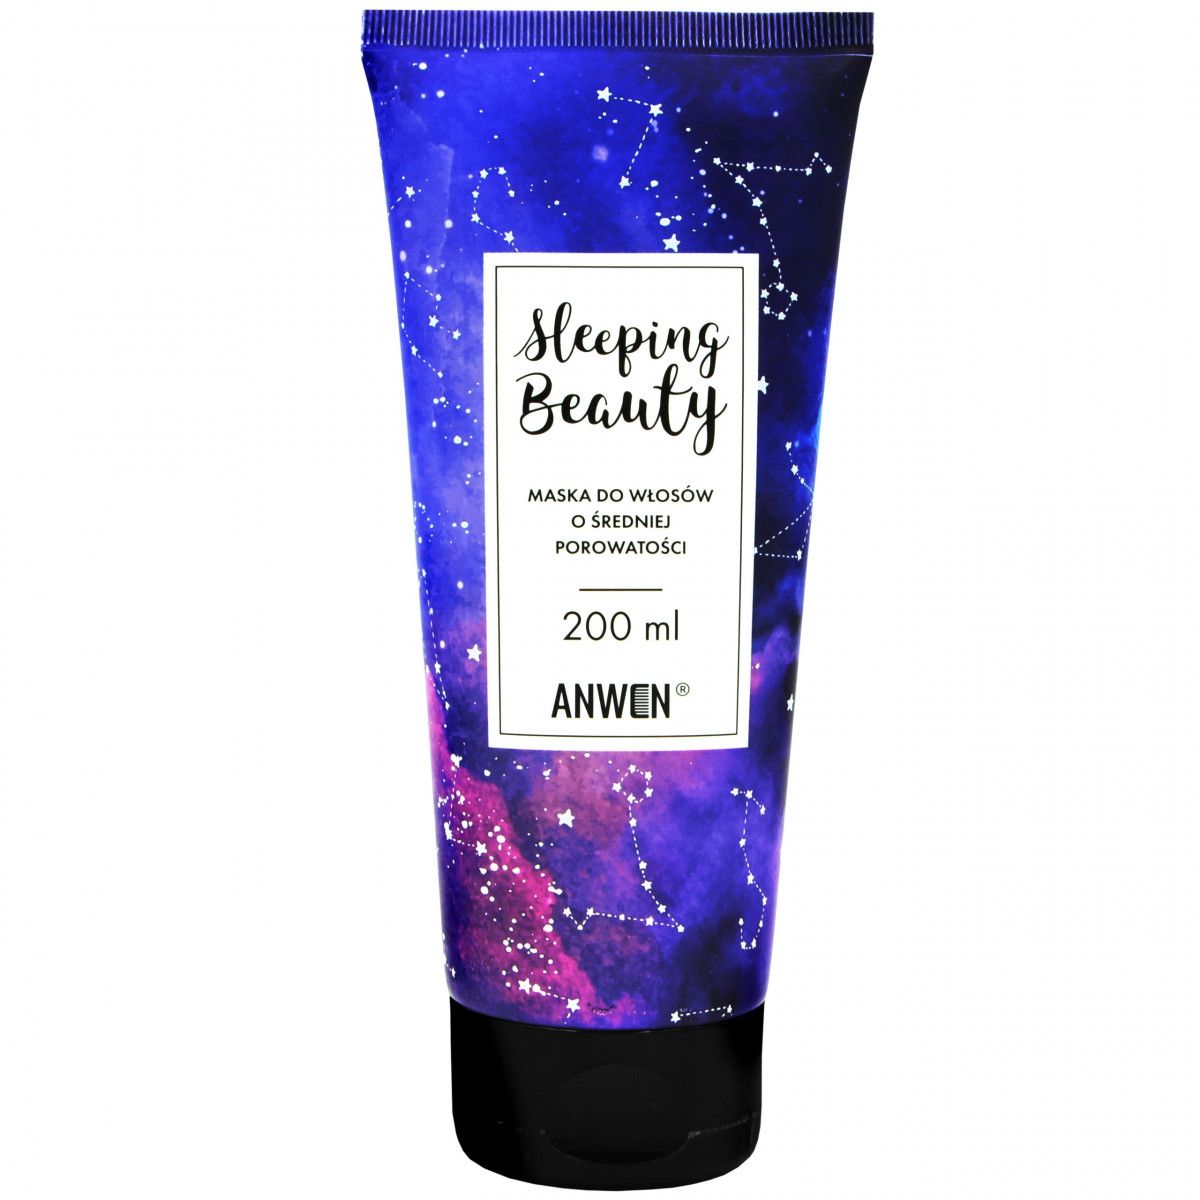 Anwen Sleeping Beauty nocna maska do włosów o średniej porowatości 200ml Anwen - 1